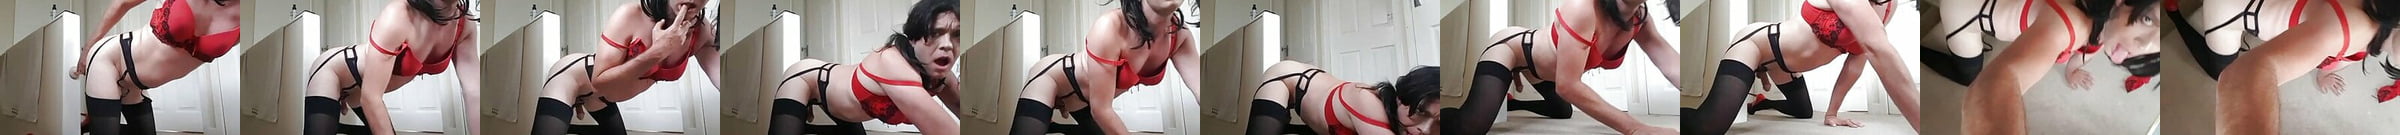 Kik Sissy British And Shemale Sissy Porn Video 5a